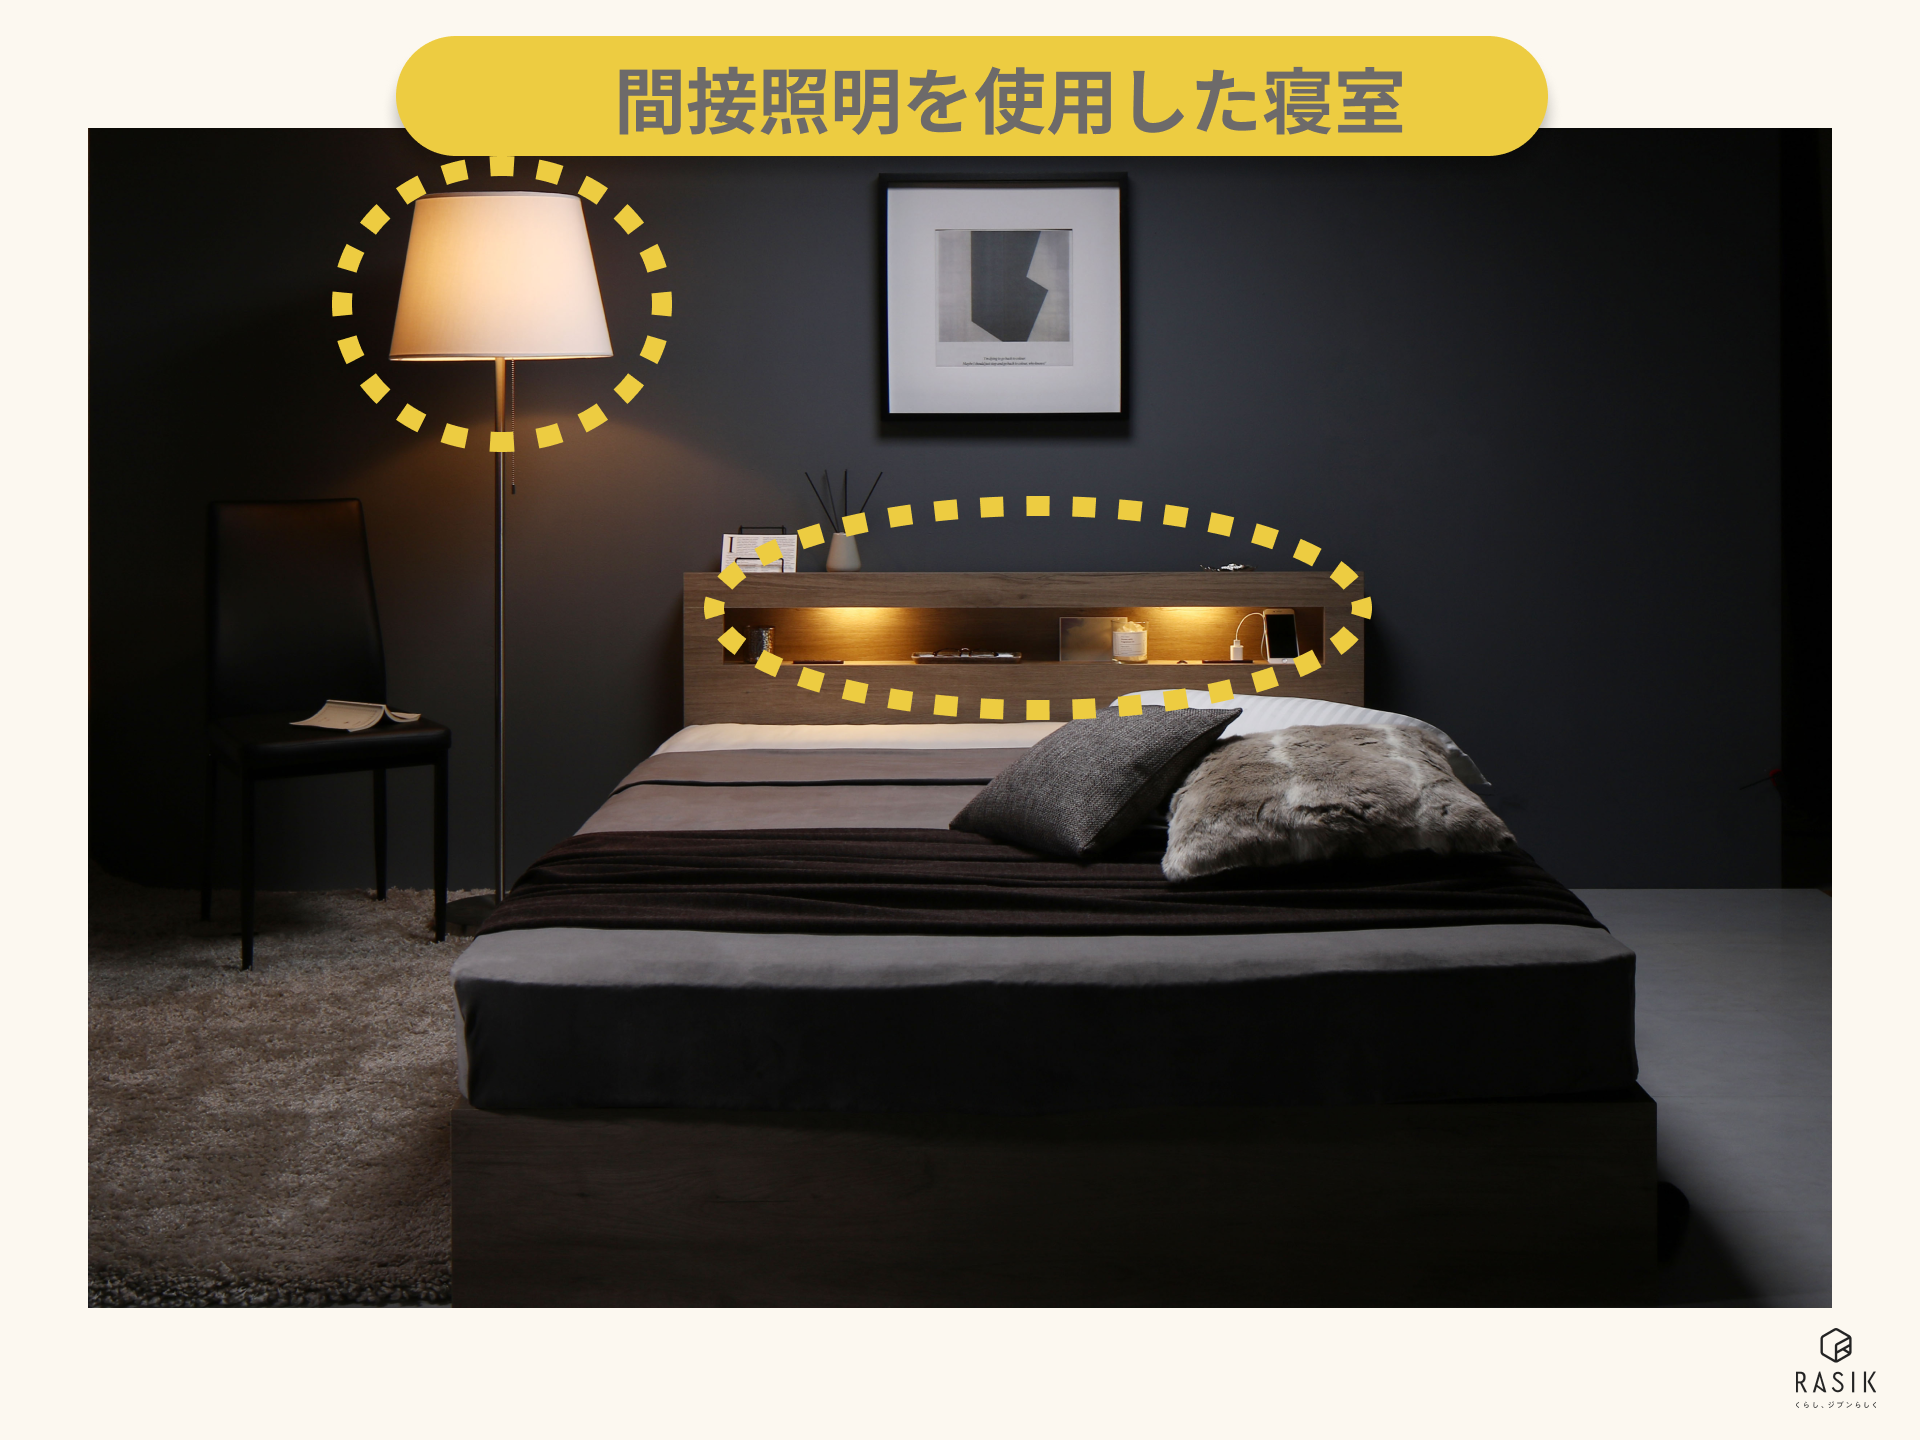 間接照明を使用した寝室